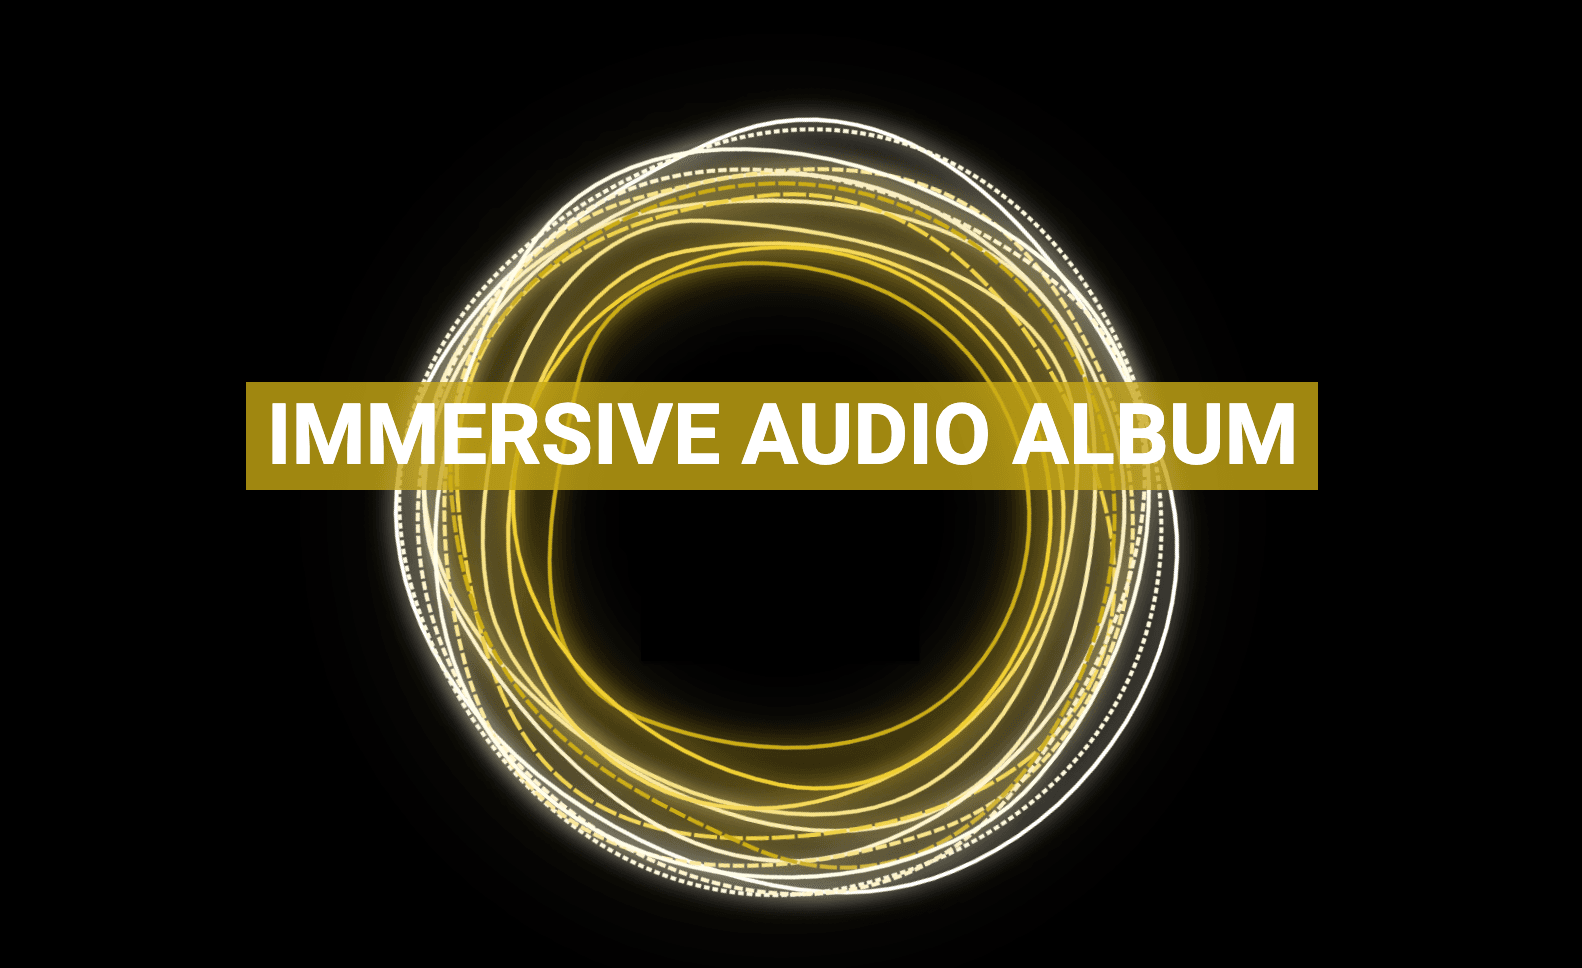 ImmersiveAudioAlbum banner